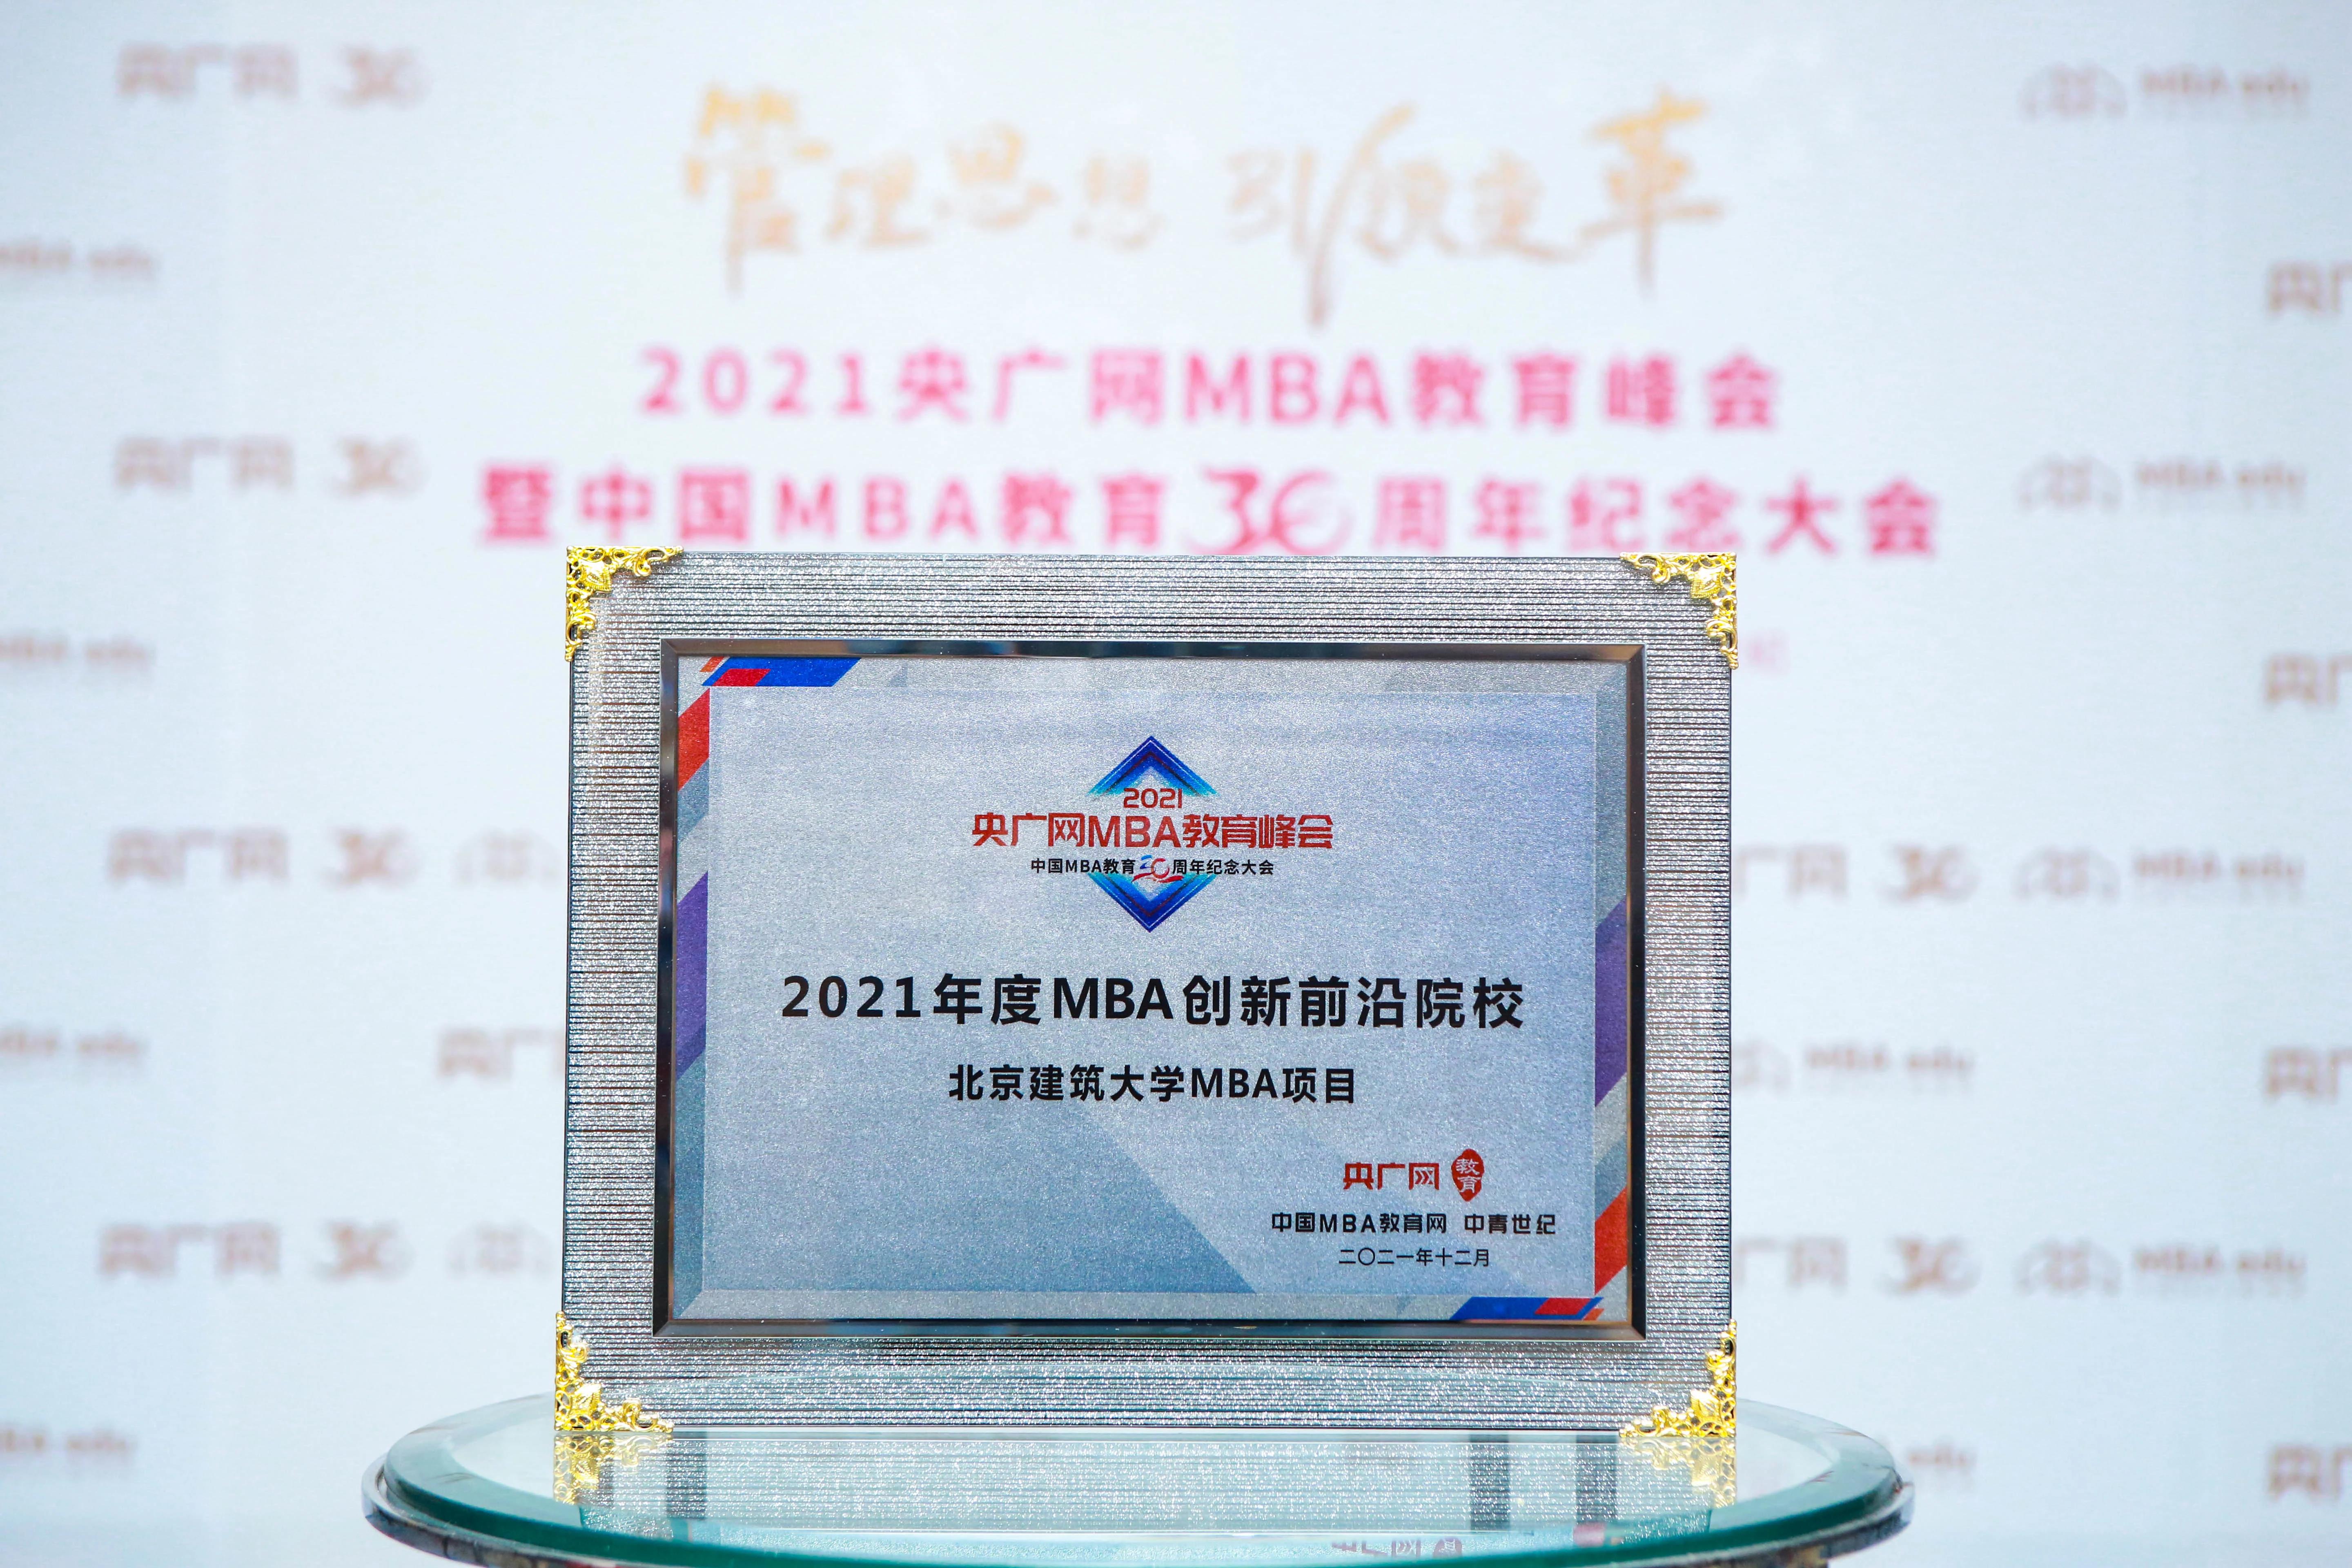 喜讯 | 北京建筑大学MBA项目荣获2021年度MBA创新前沿院校奖项